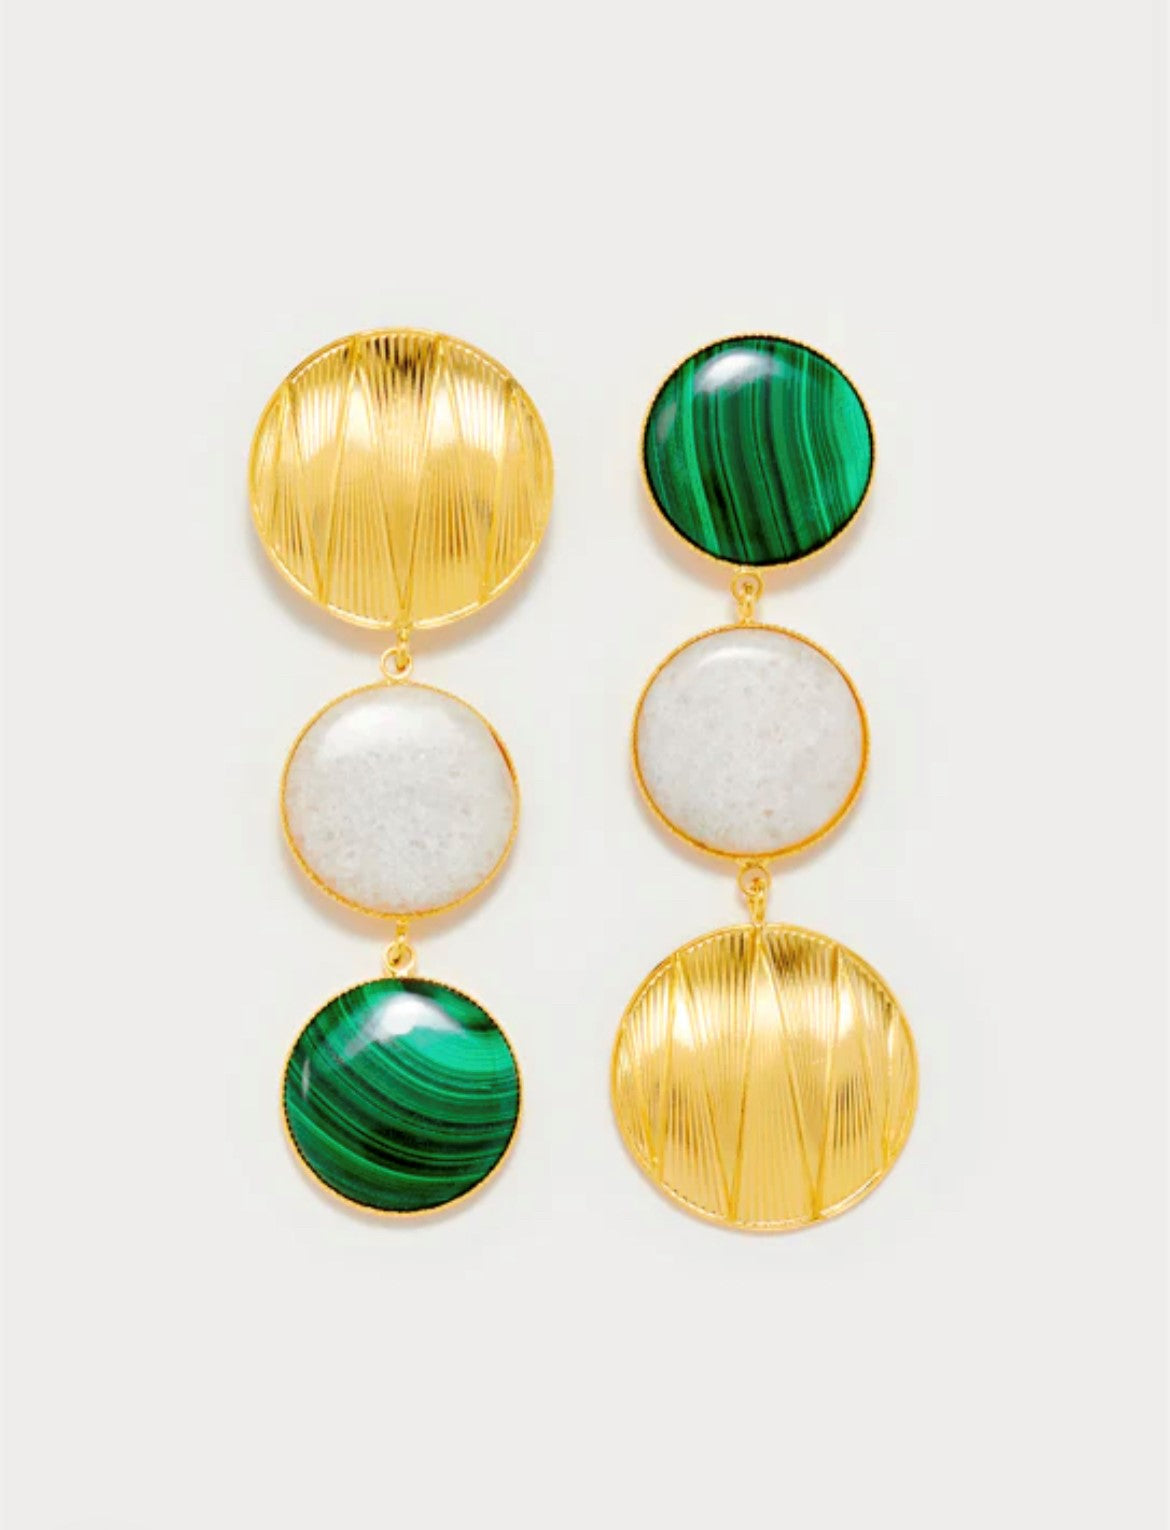 Sonia geometric earrings - Destree